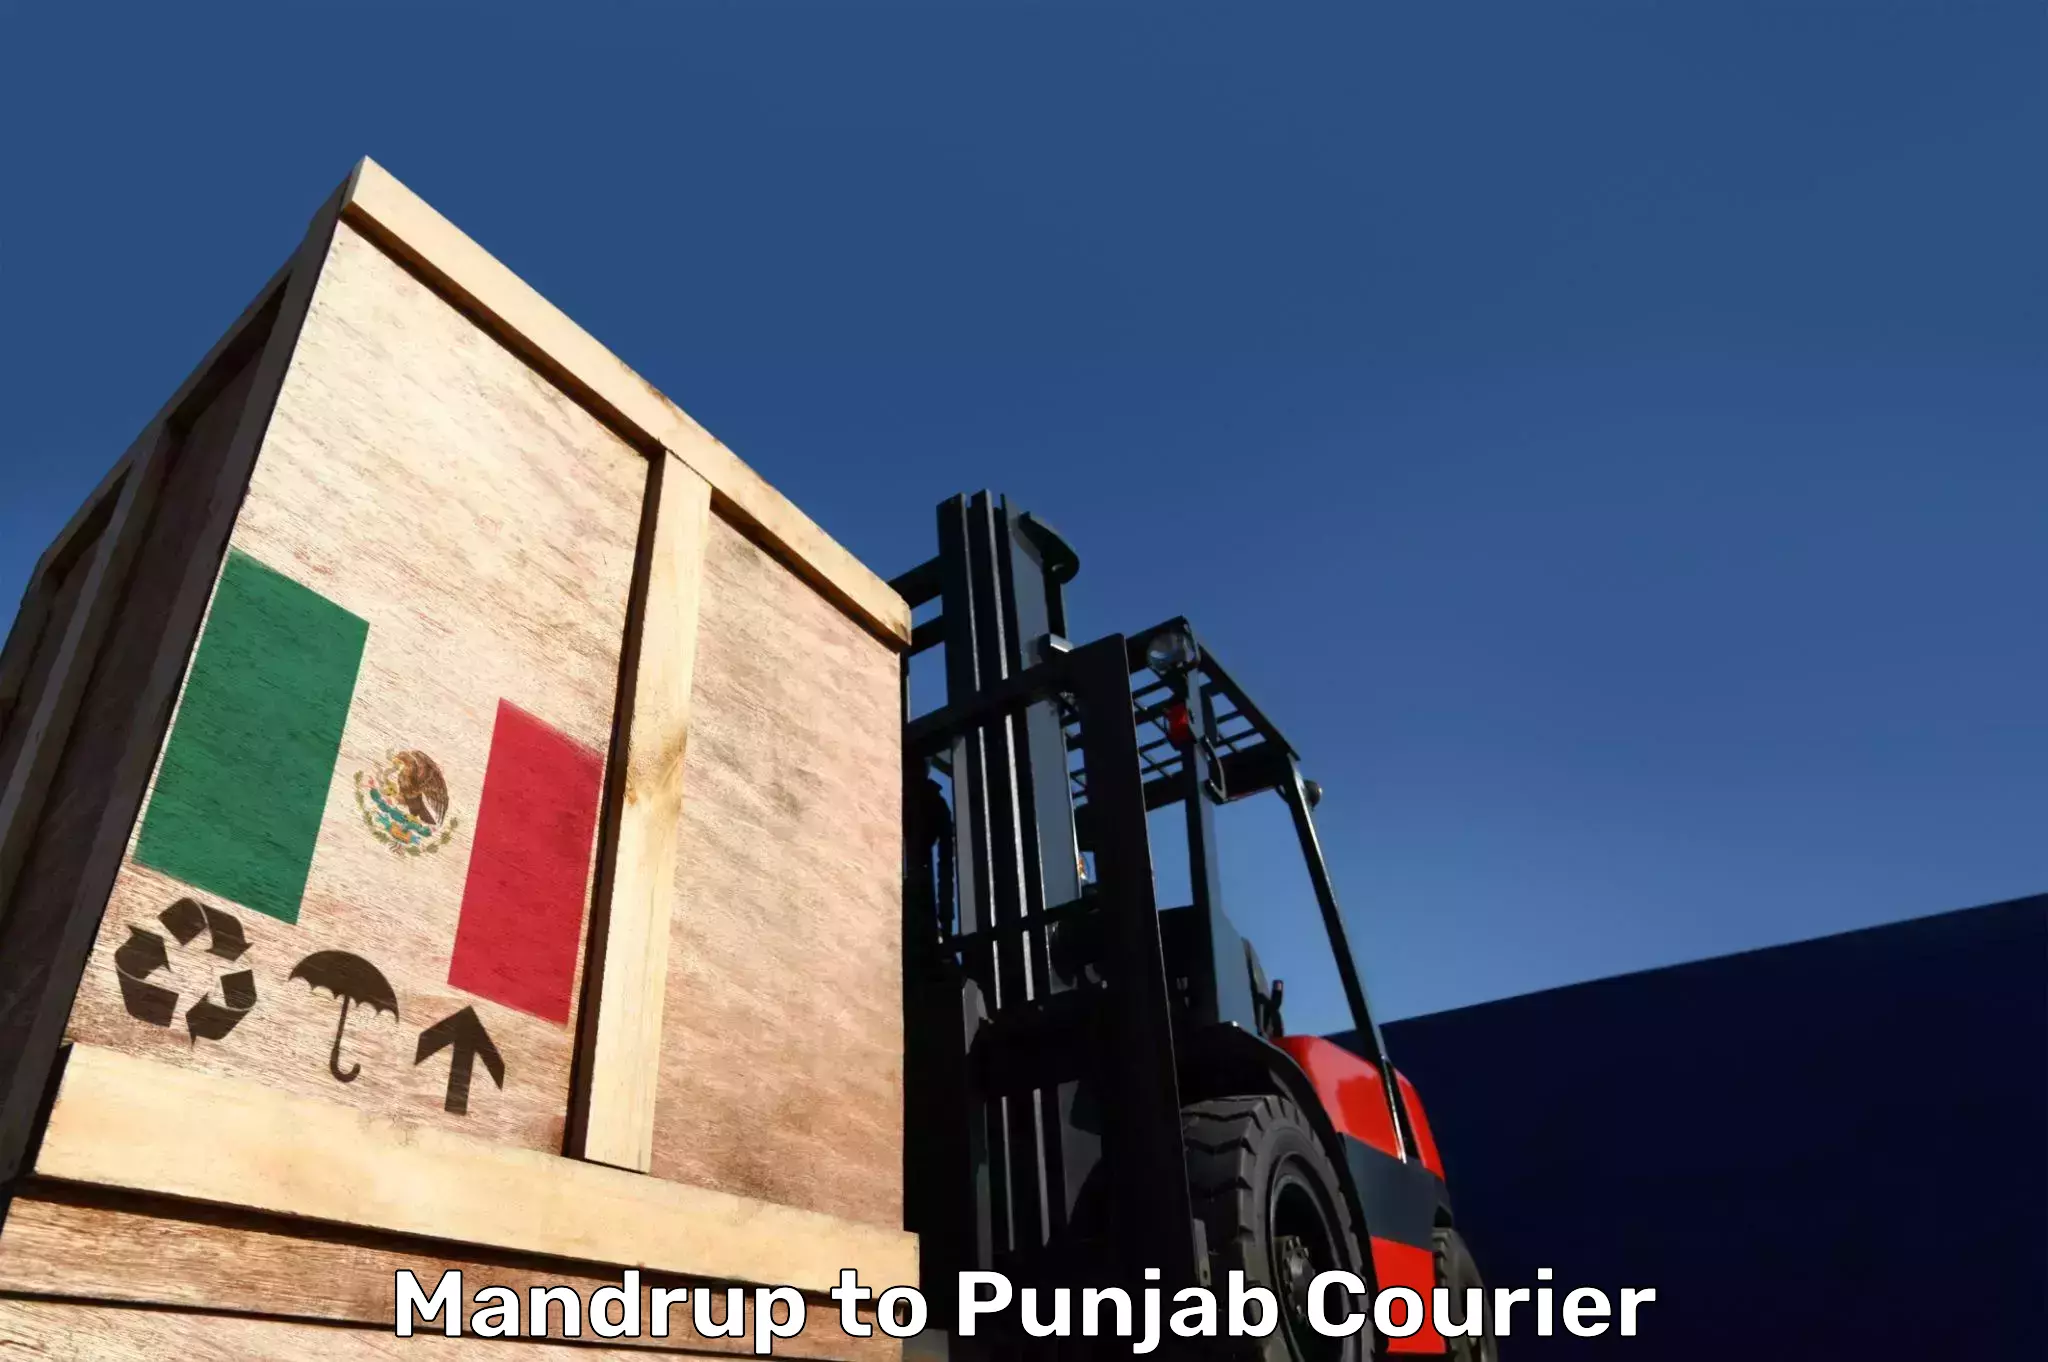 Baggage transport scheduler in Mandrup to Punjab